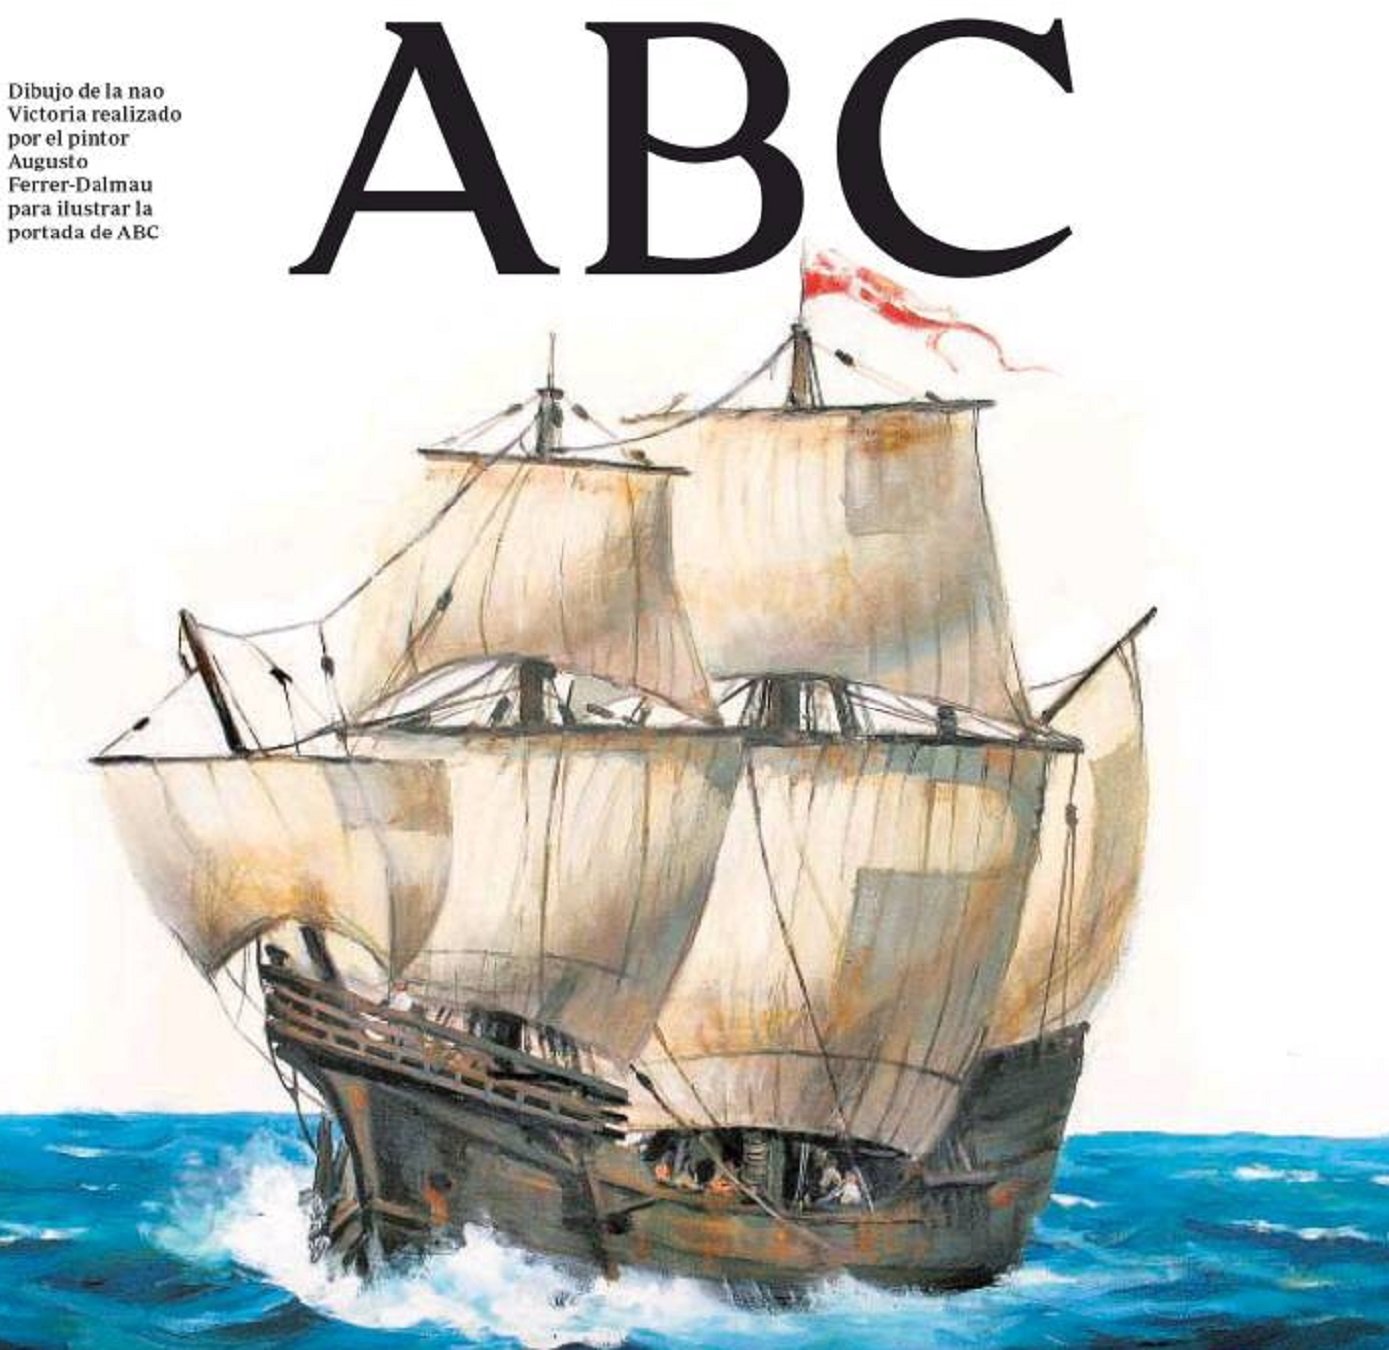 Escarni sense precedents amb la portada més freaky de la història de l'ABC